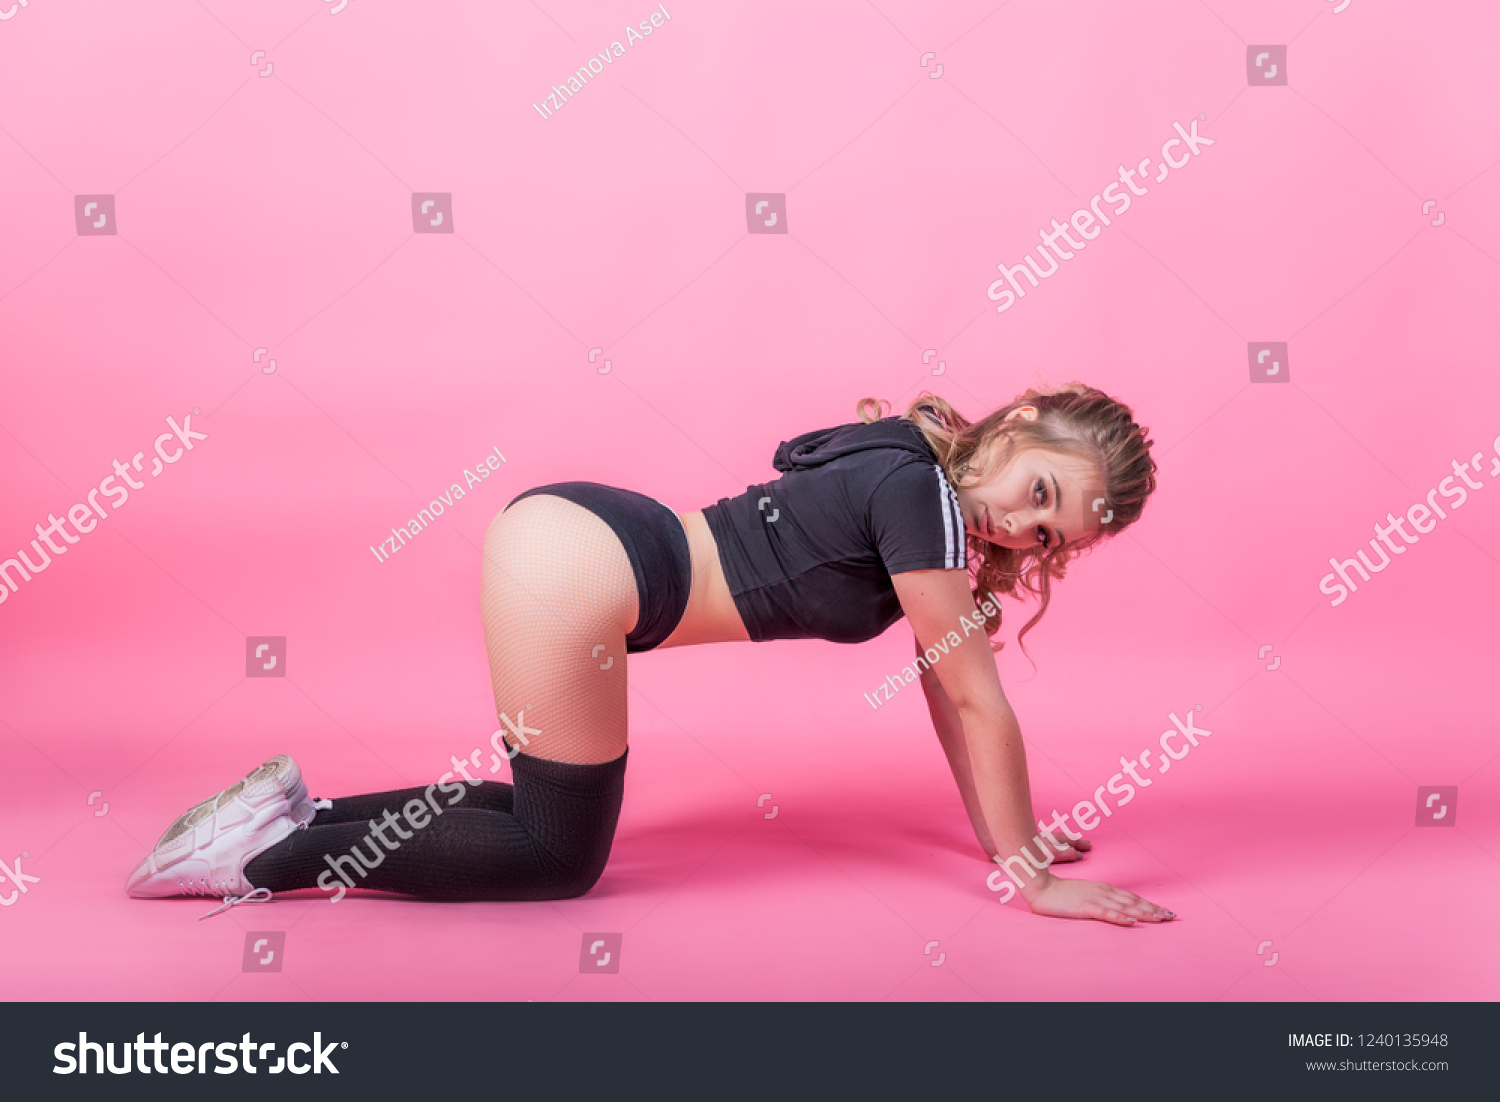 Teen Girl Ass Picture